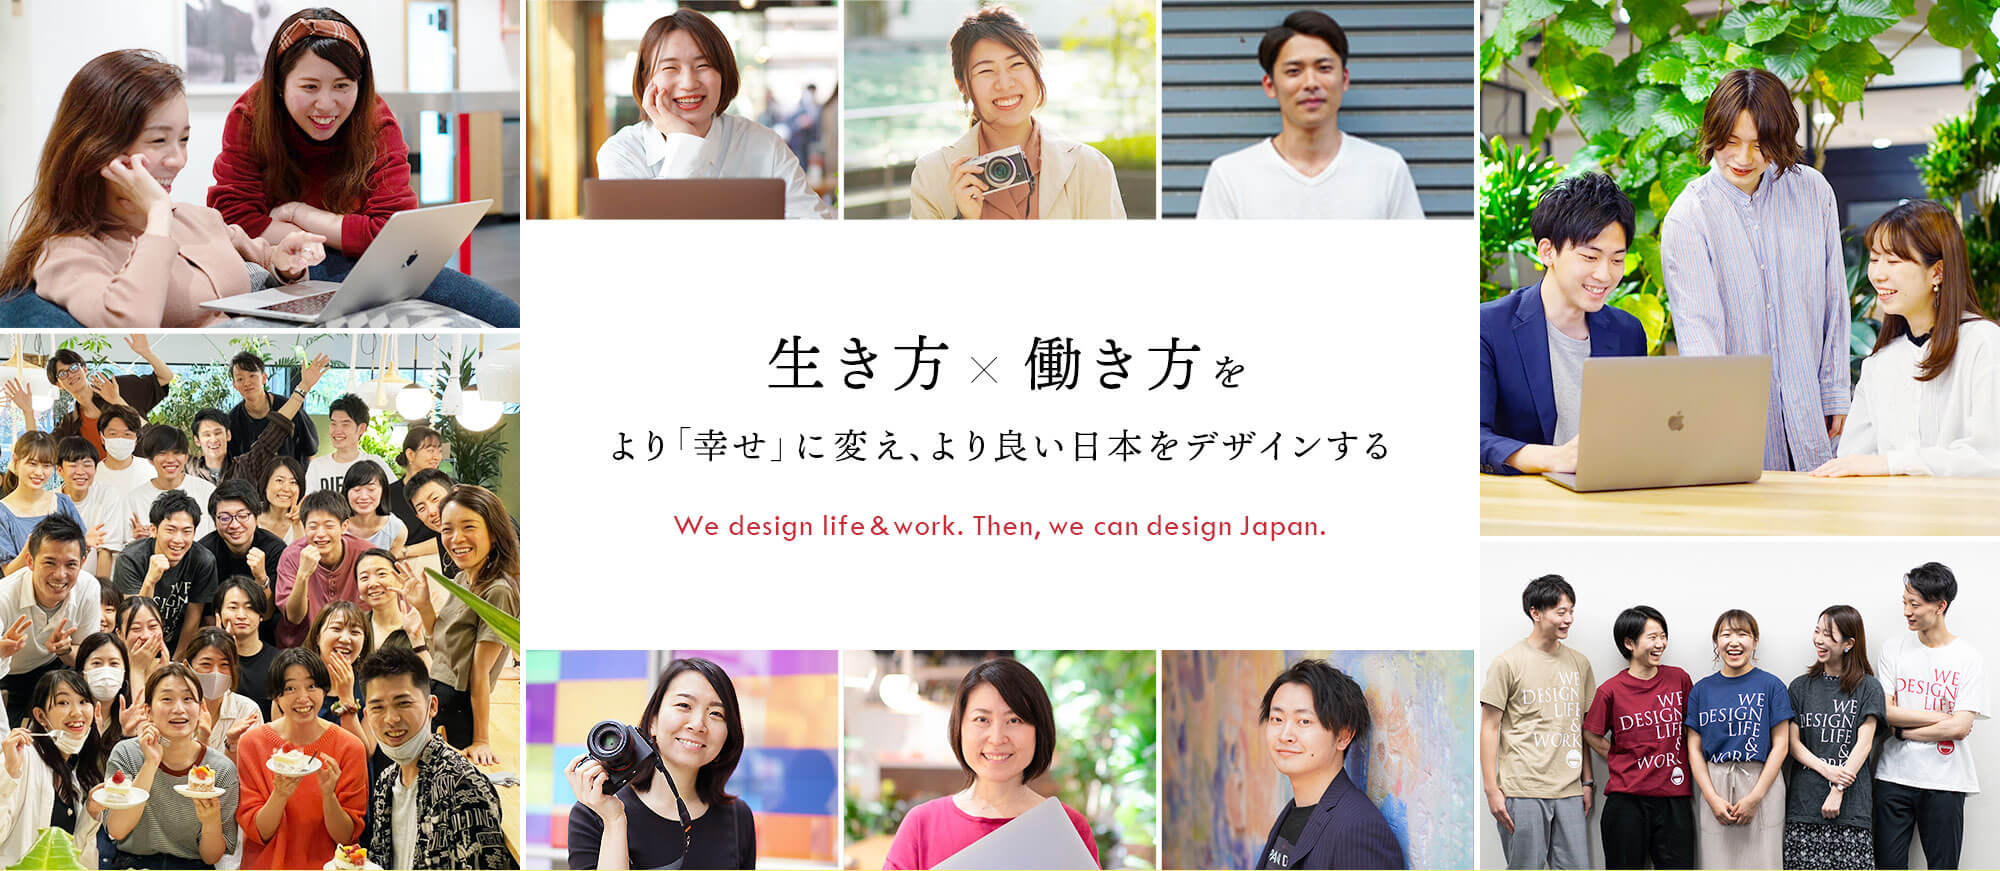 生き方×働き方をより「幸せ」に変え、よりよい日本をデザインする